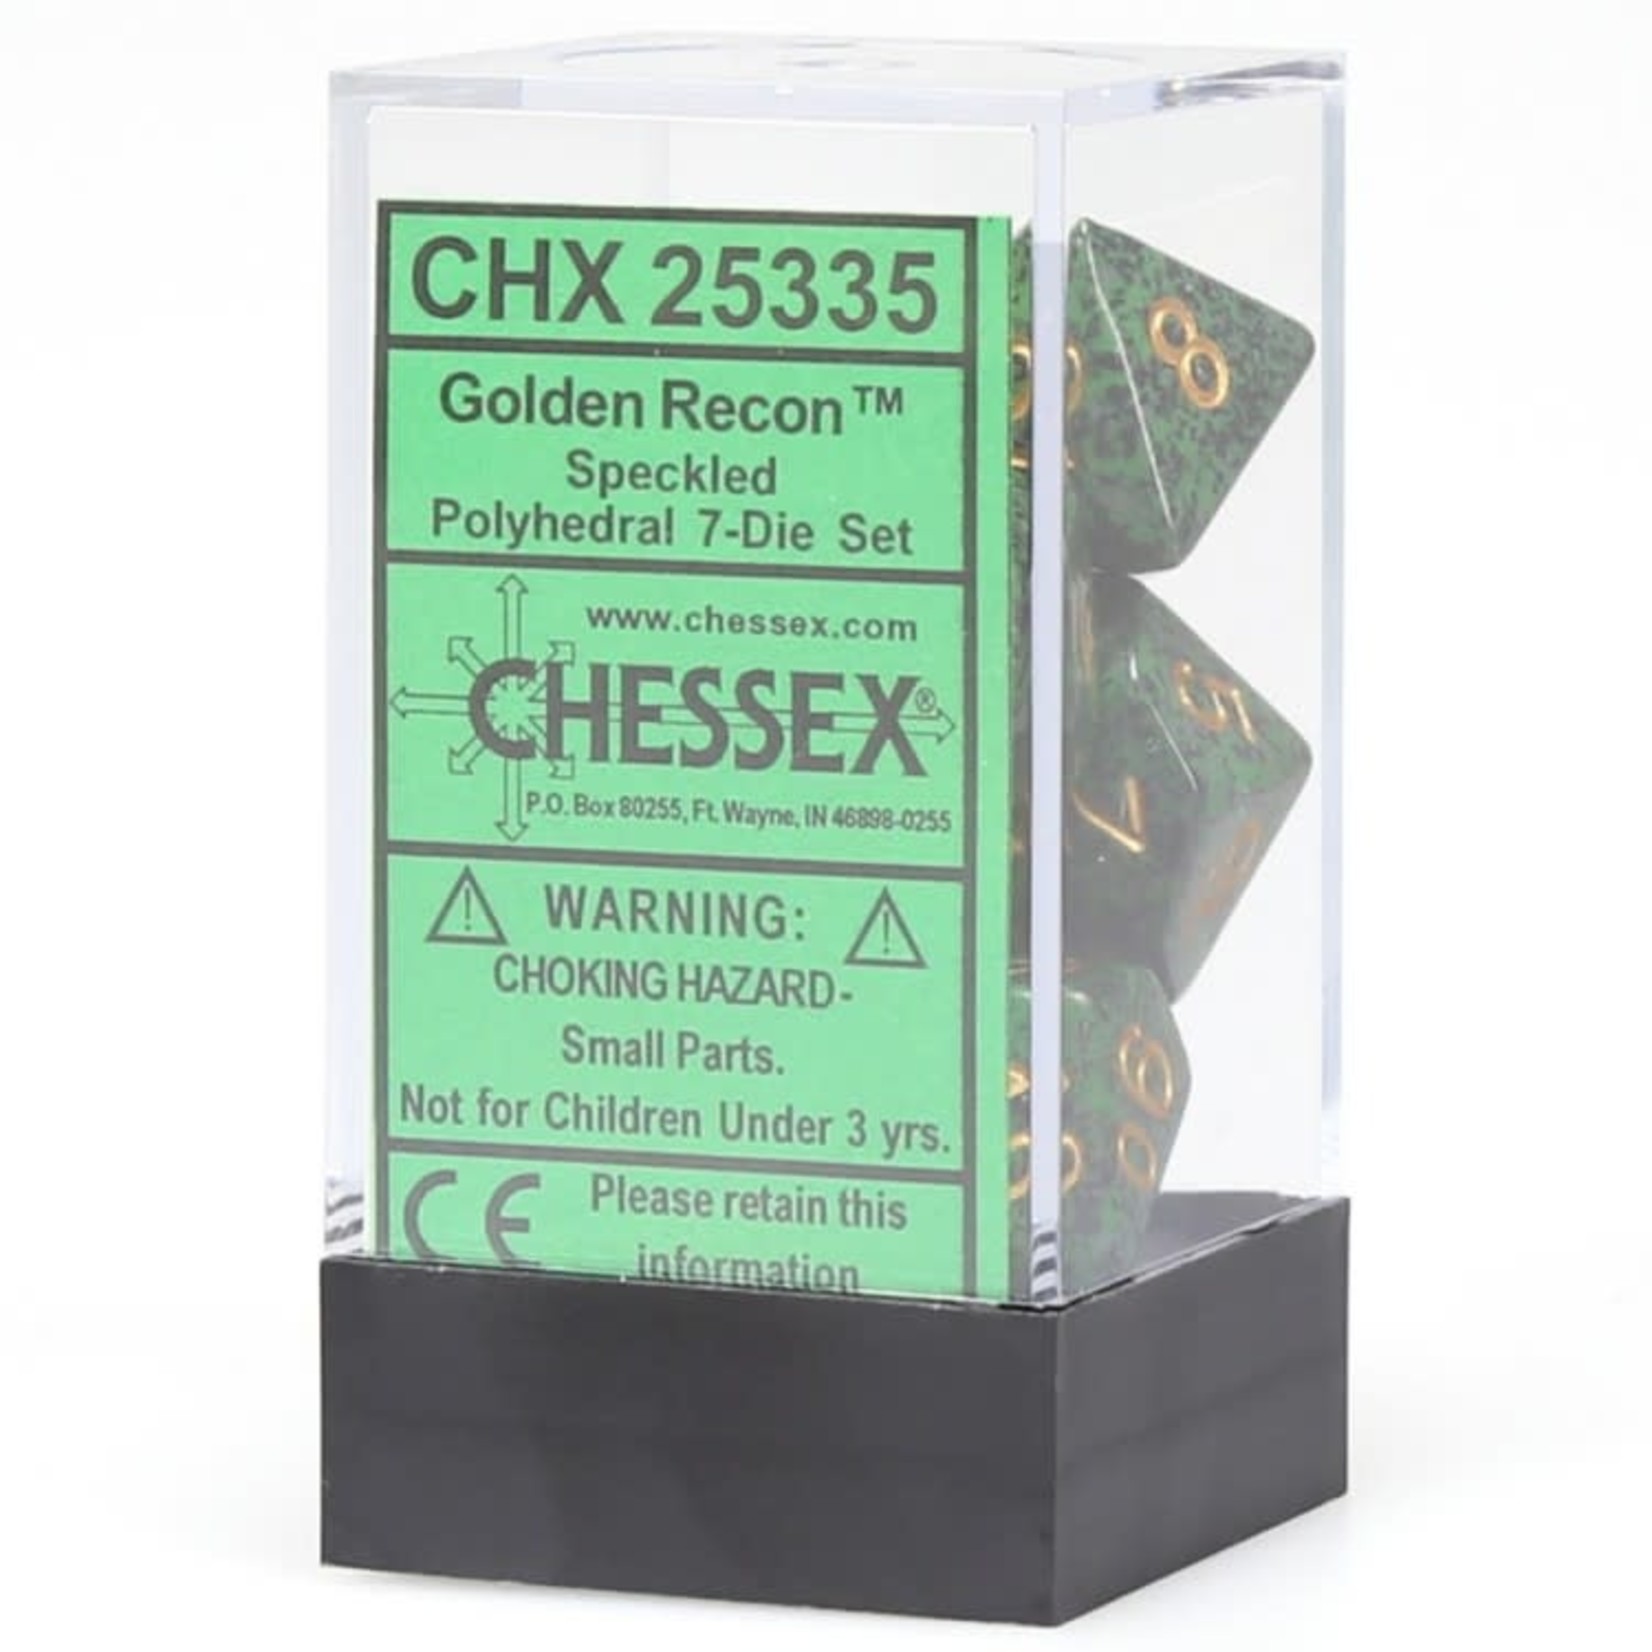 Chessex Chessex Speckled Golden Recon Polyhedral 7 die set